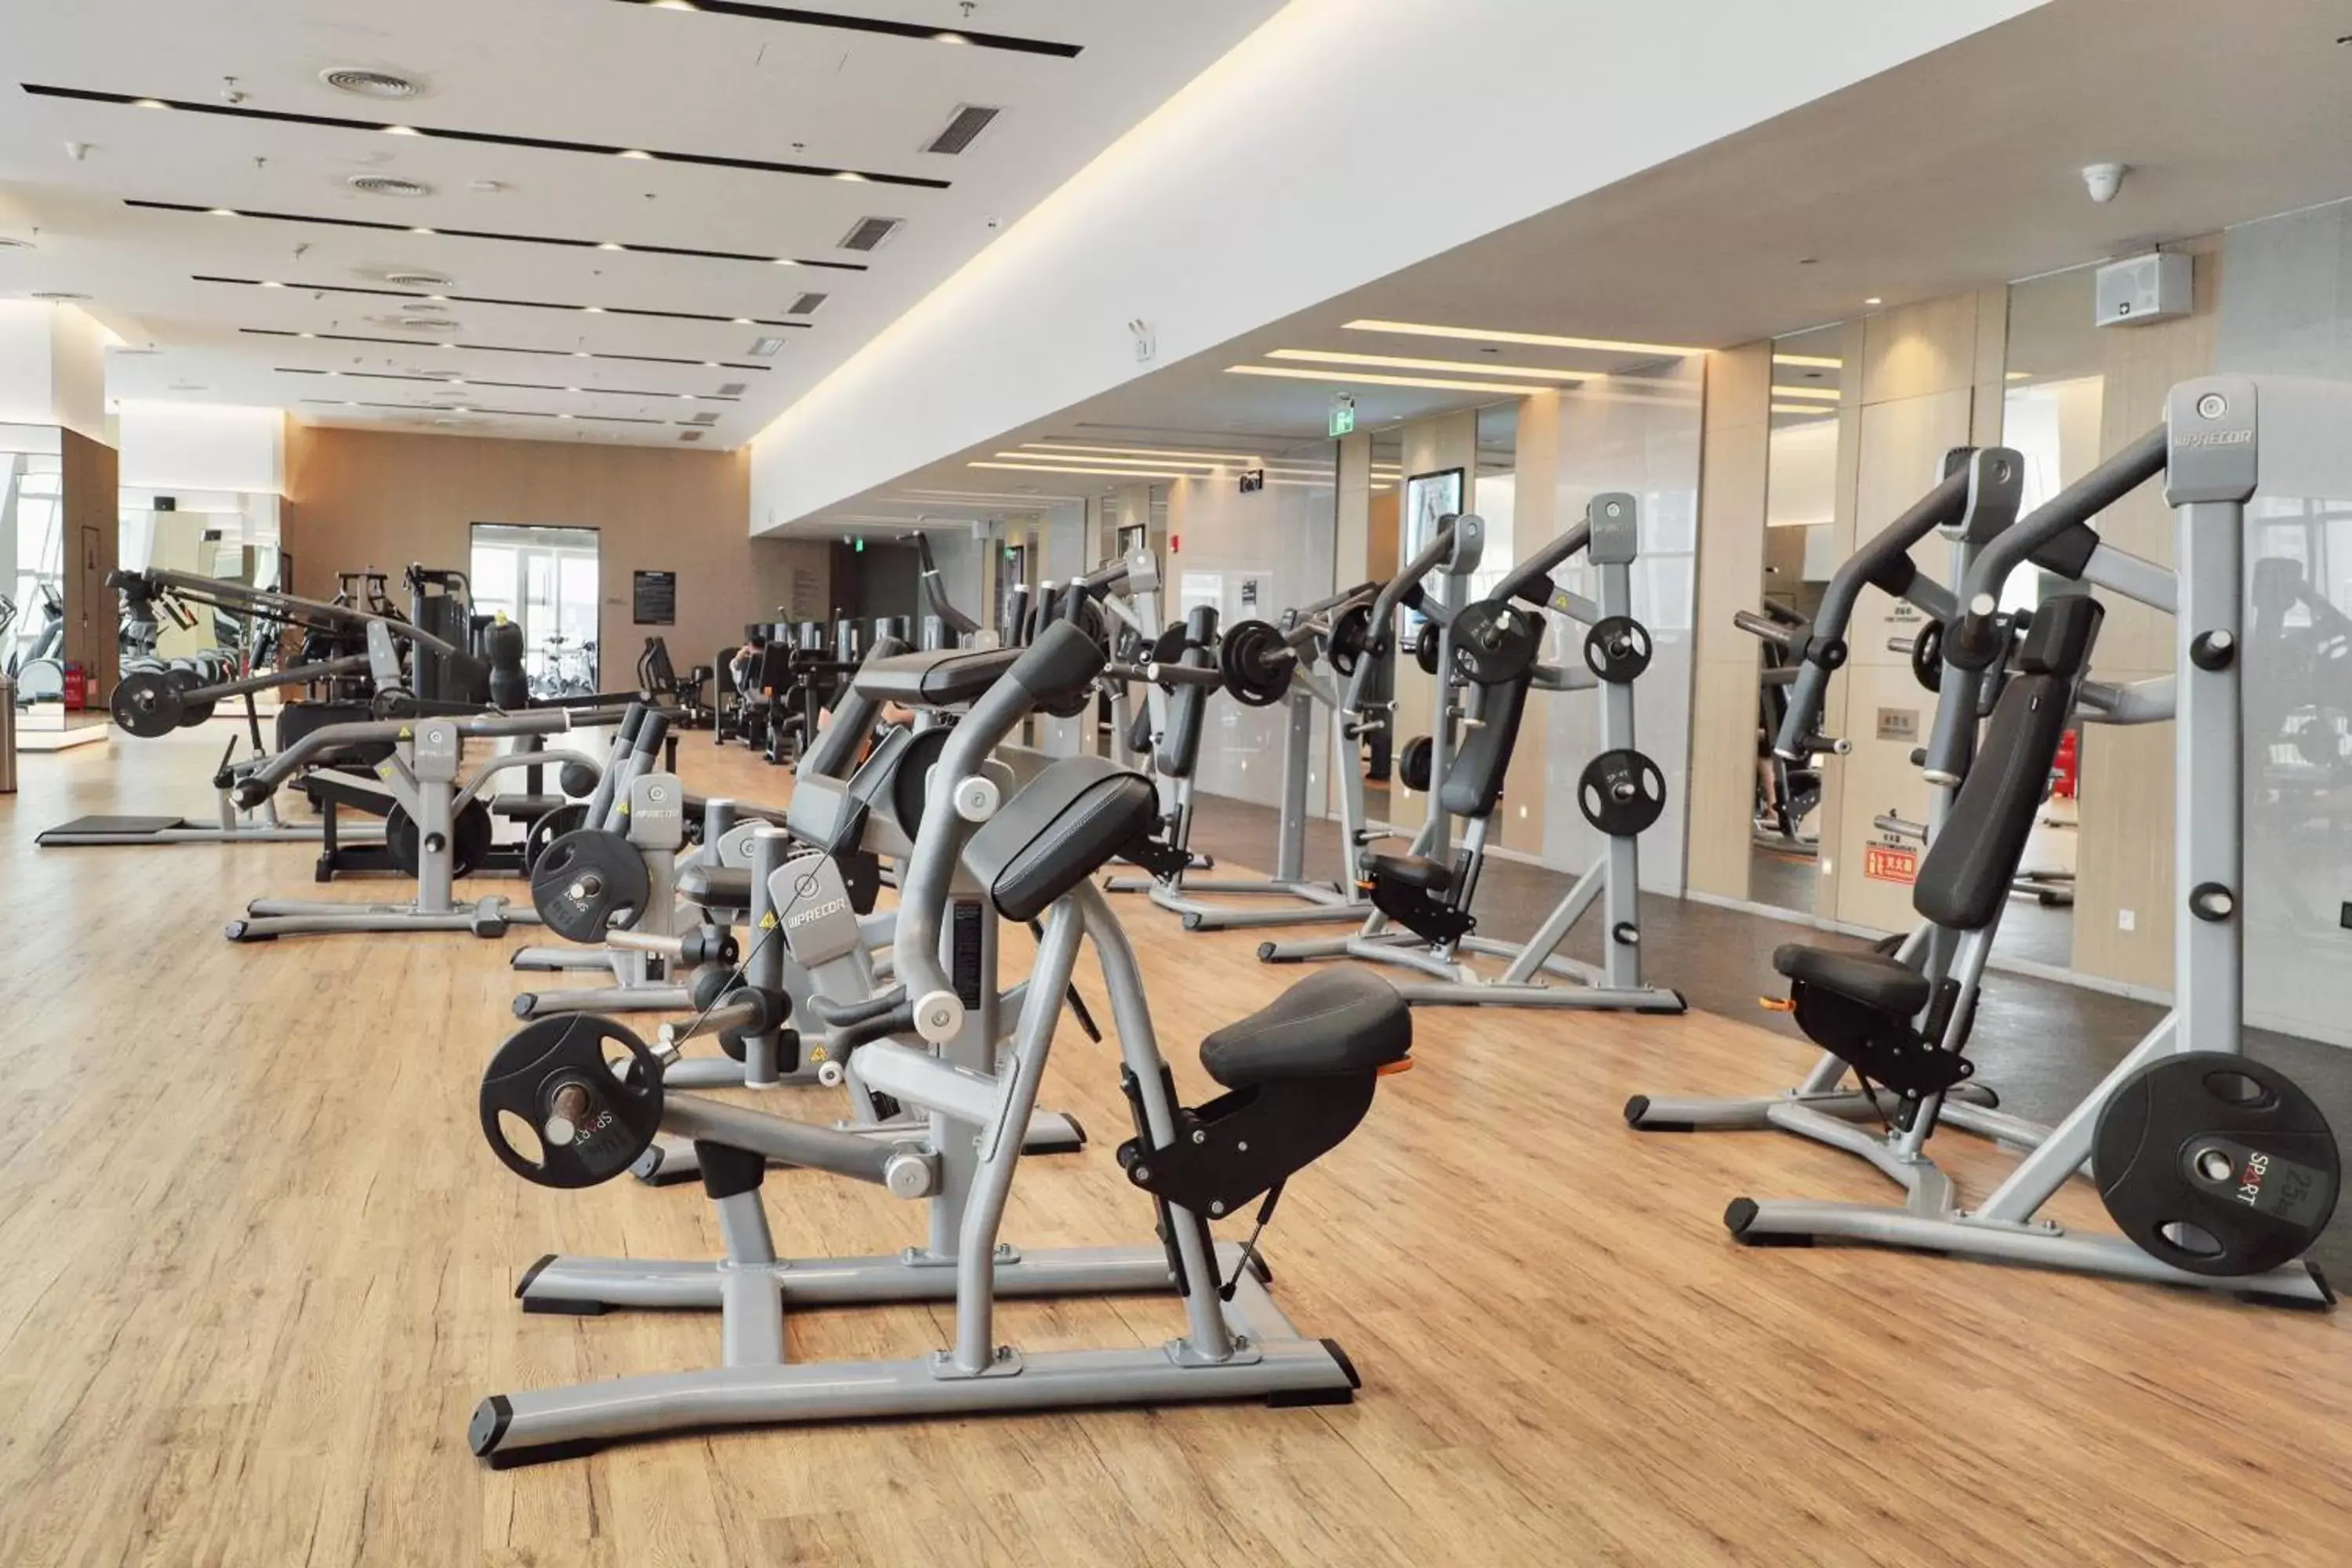 Fitness centre/facilities, Fitness Center/Facilities in Hyatt Regency Shenzhen Yantian